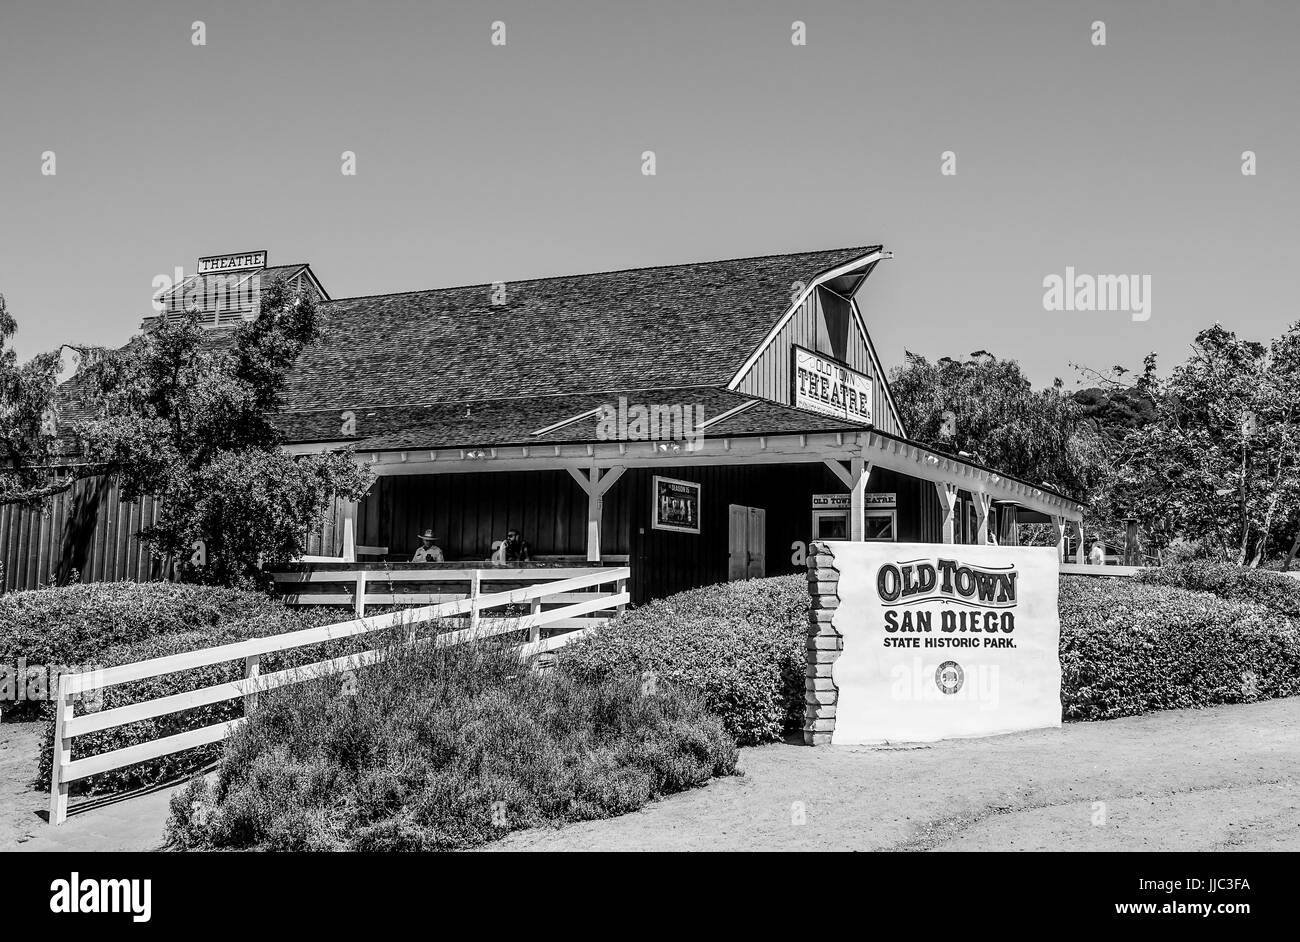 San Diego Old Town State Historic Park - SAN DIEGO, Kalifornien, USA - 21. April 2017 Stockfoto